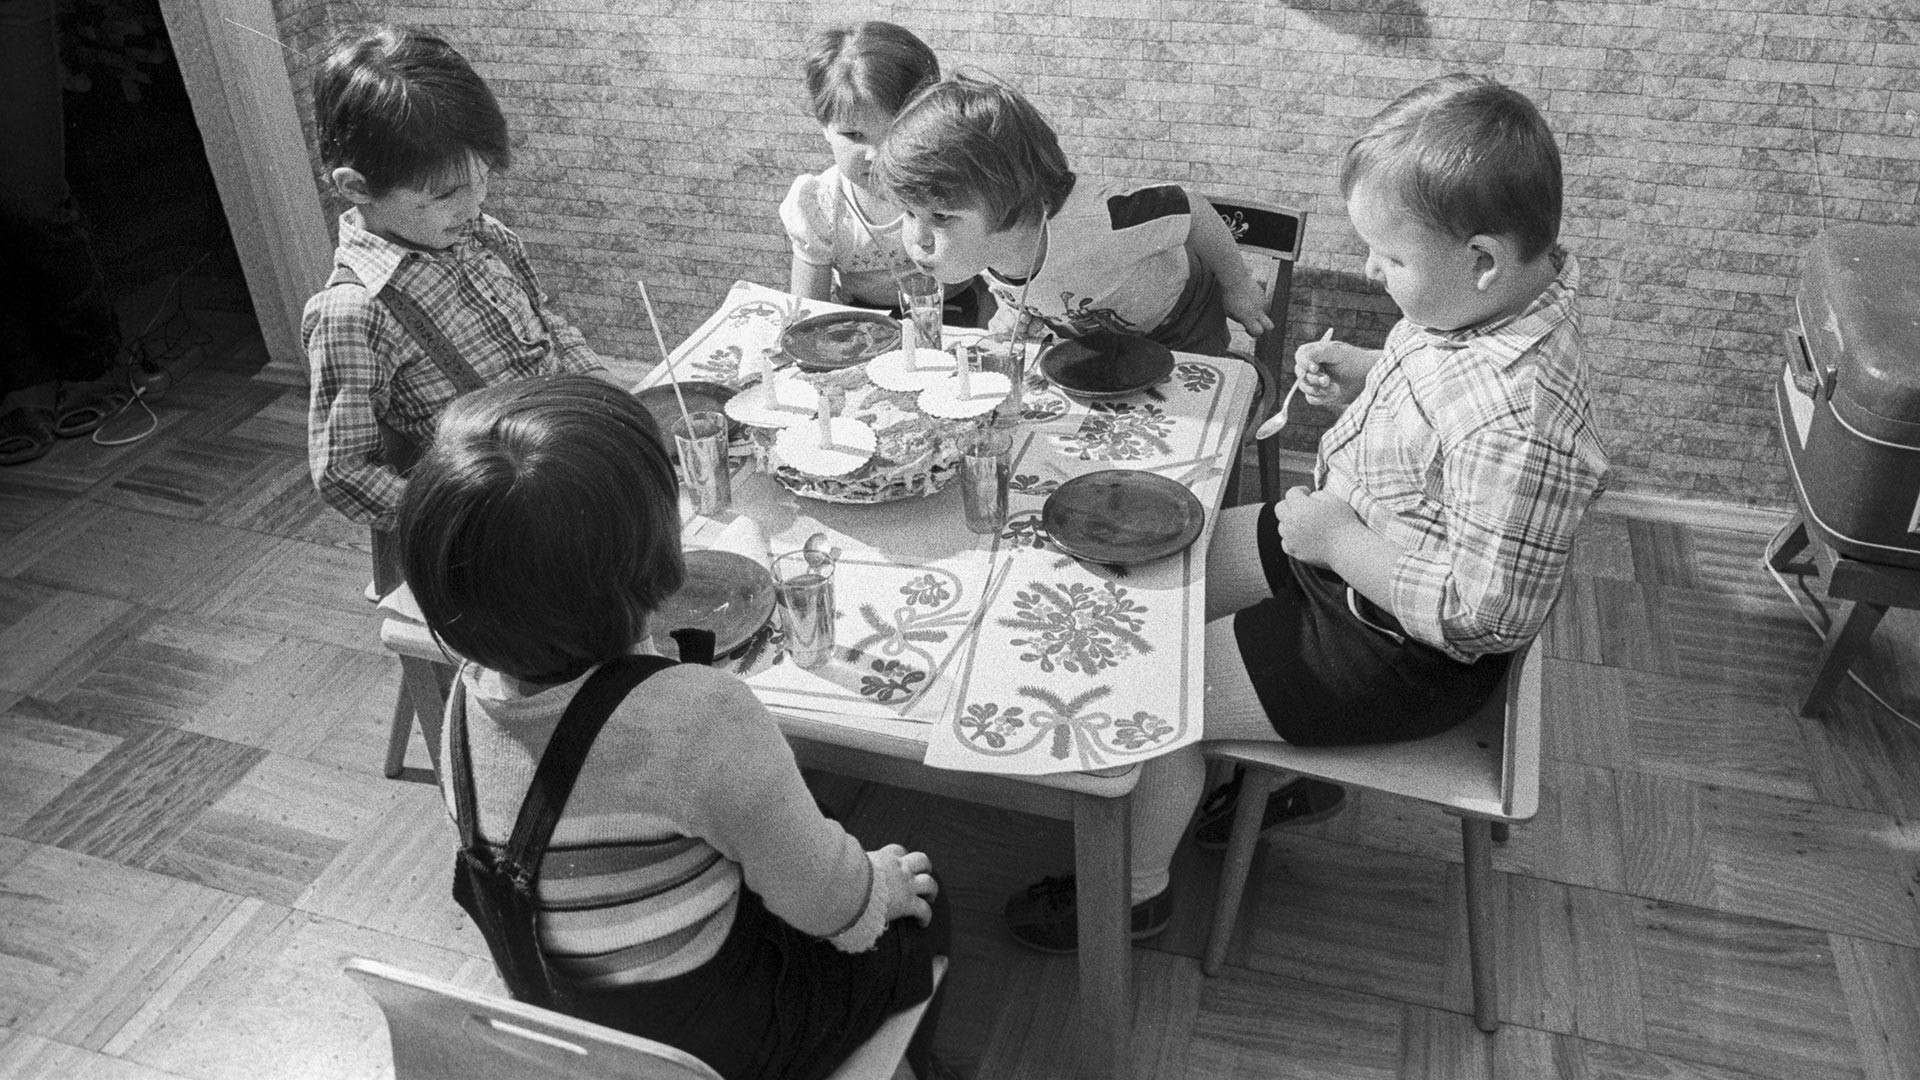 El típico cumpleaños de un niño en la URSS era así.

